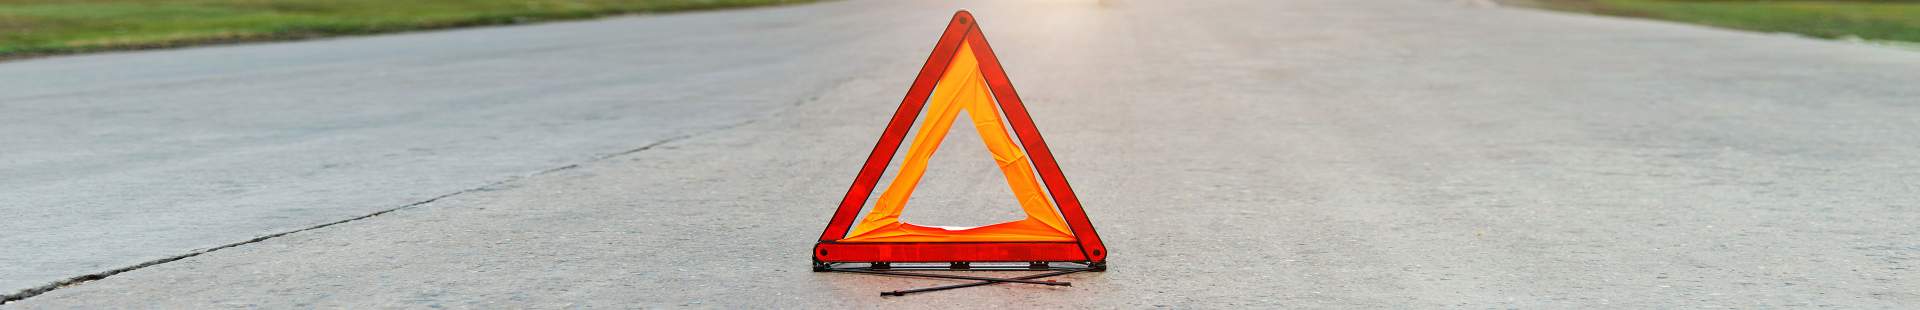 VRK Unfallhilfe – Ein Warndreieck auf einer Straße